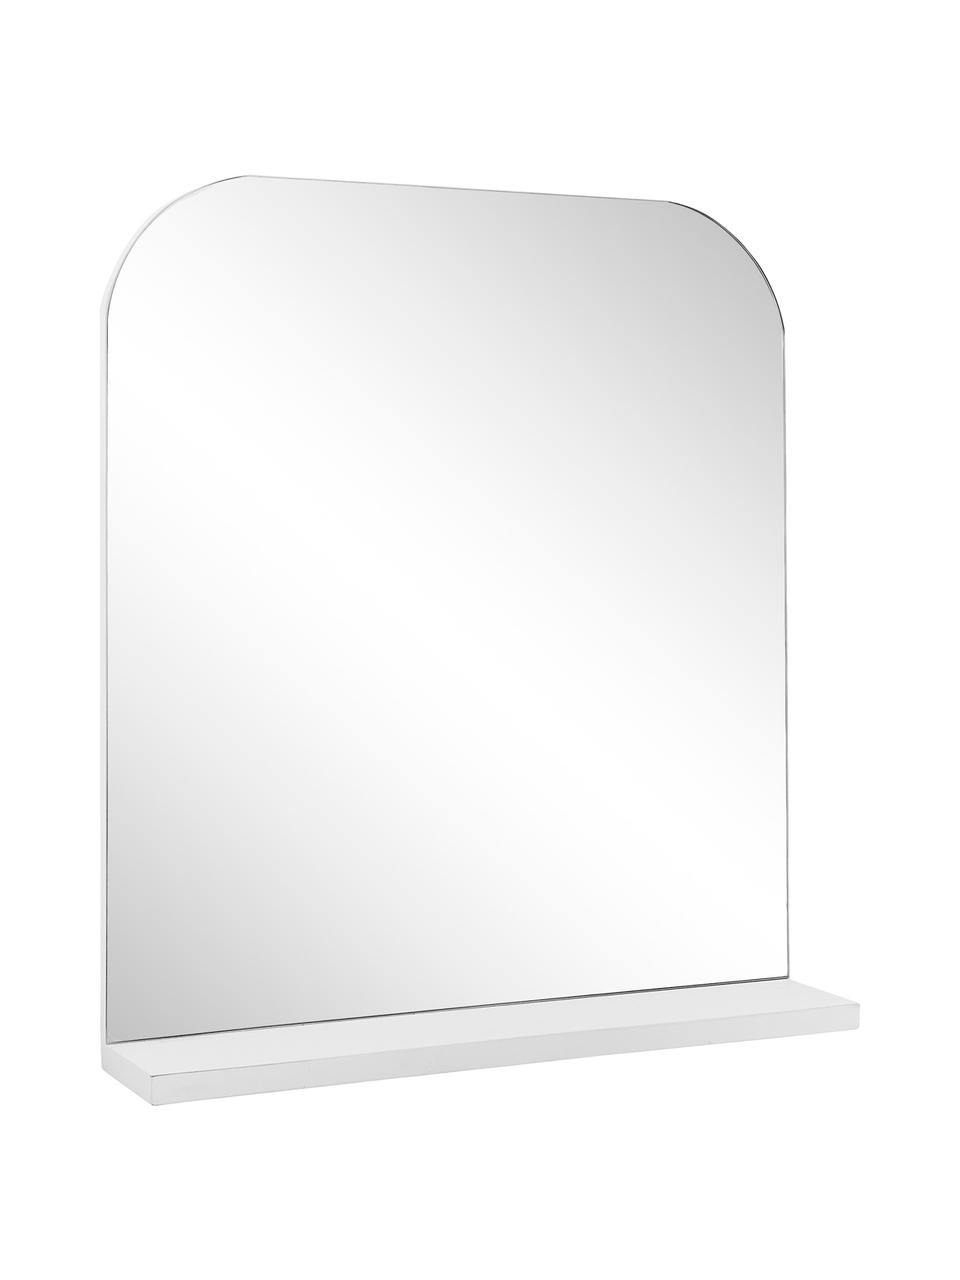 Wandspiegel Pina mit weisser Ablagefläche, Ablagefläche: Holz, Spiegelfläche: Spiegelglas, Weiss, 55 x 63 cm